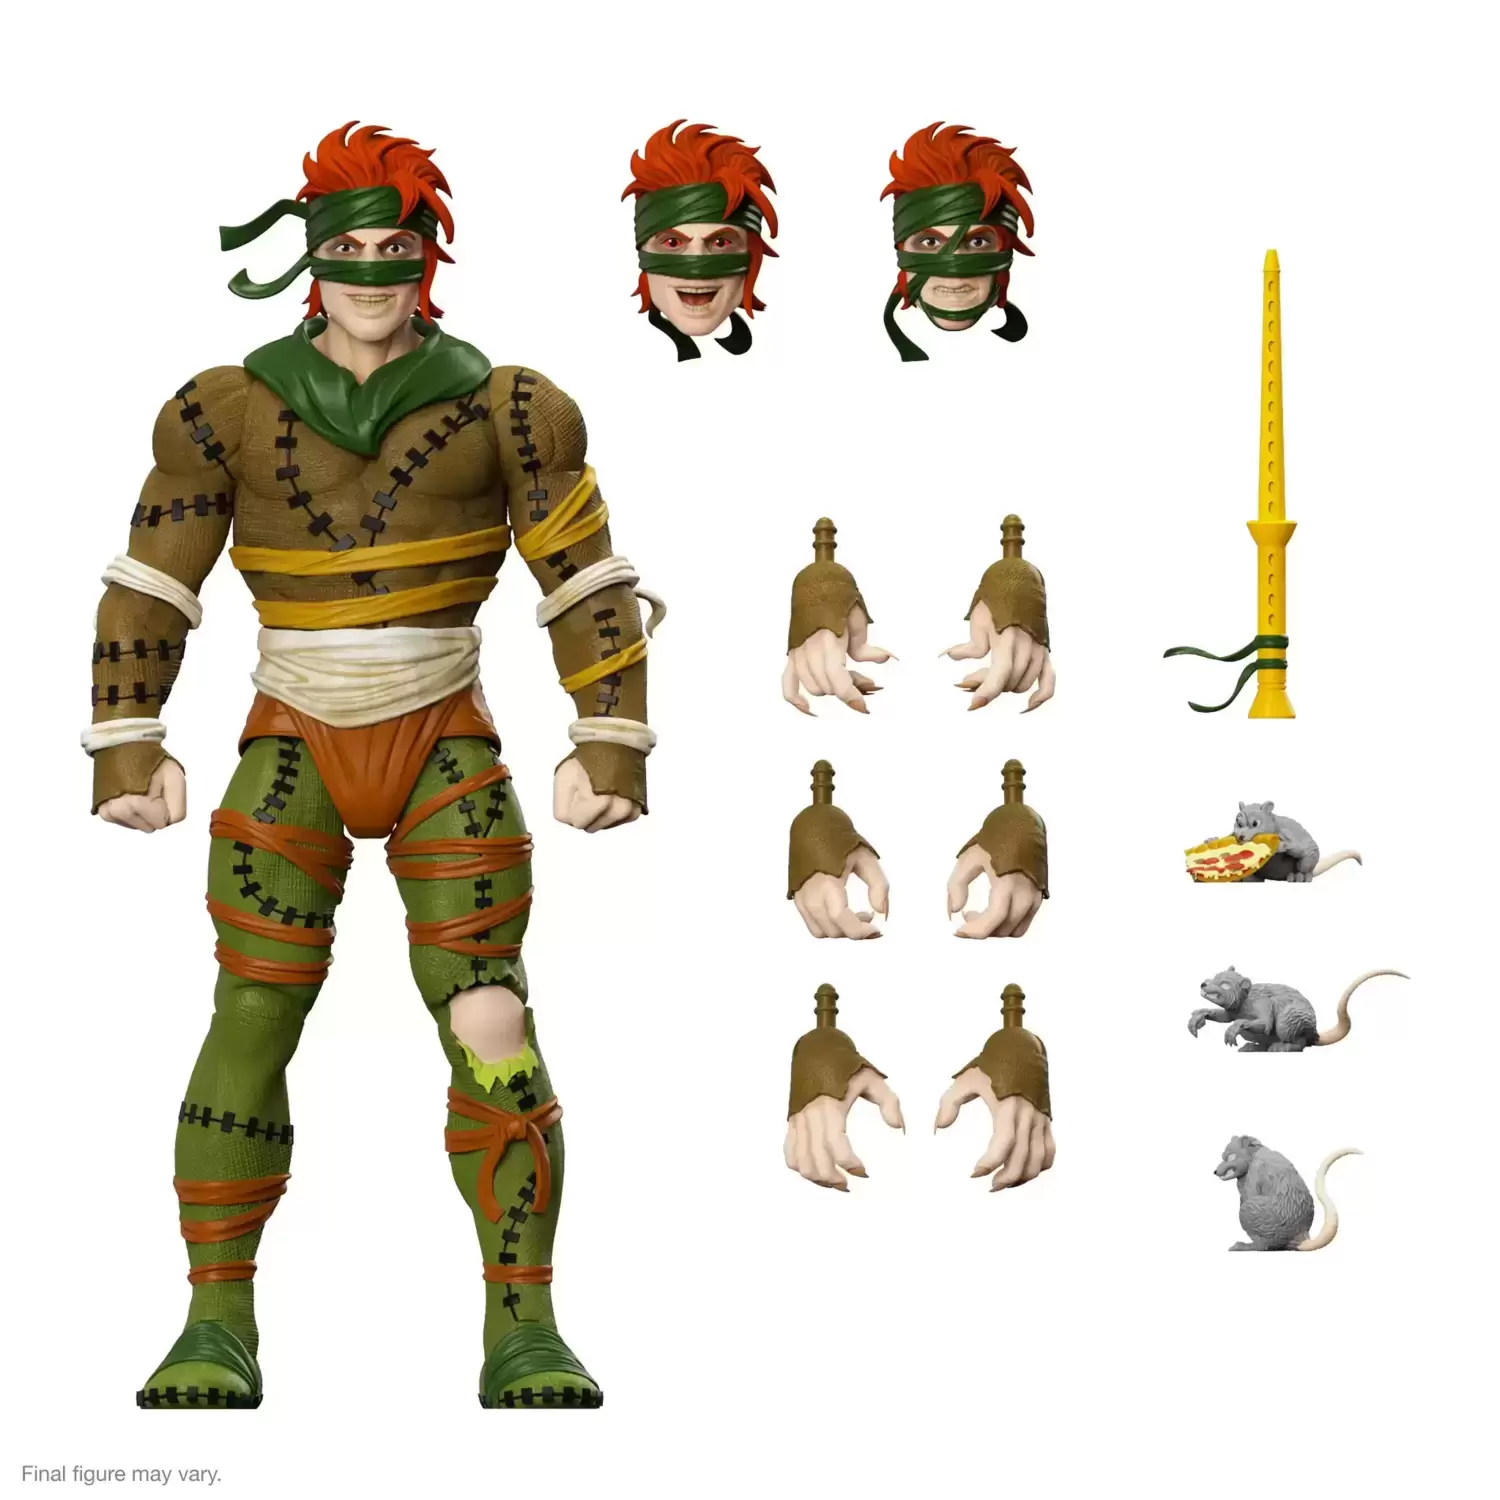 Rat King, Enter the Rat King, Teenage Mutant Ninja Turtles (TMNT